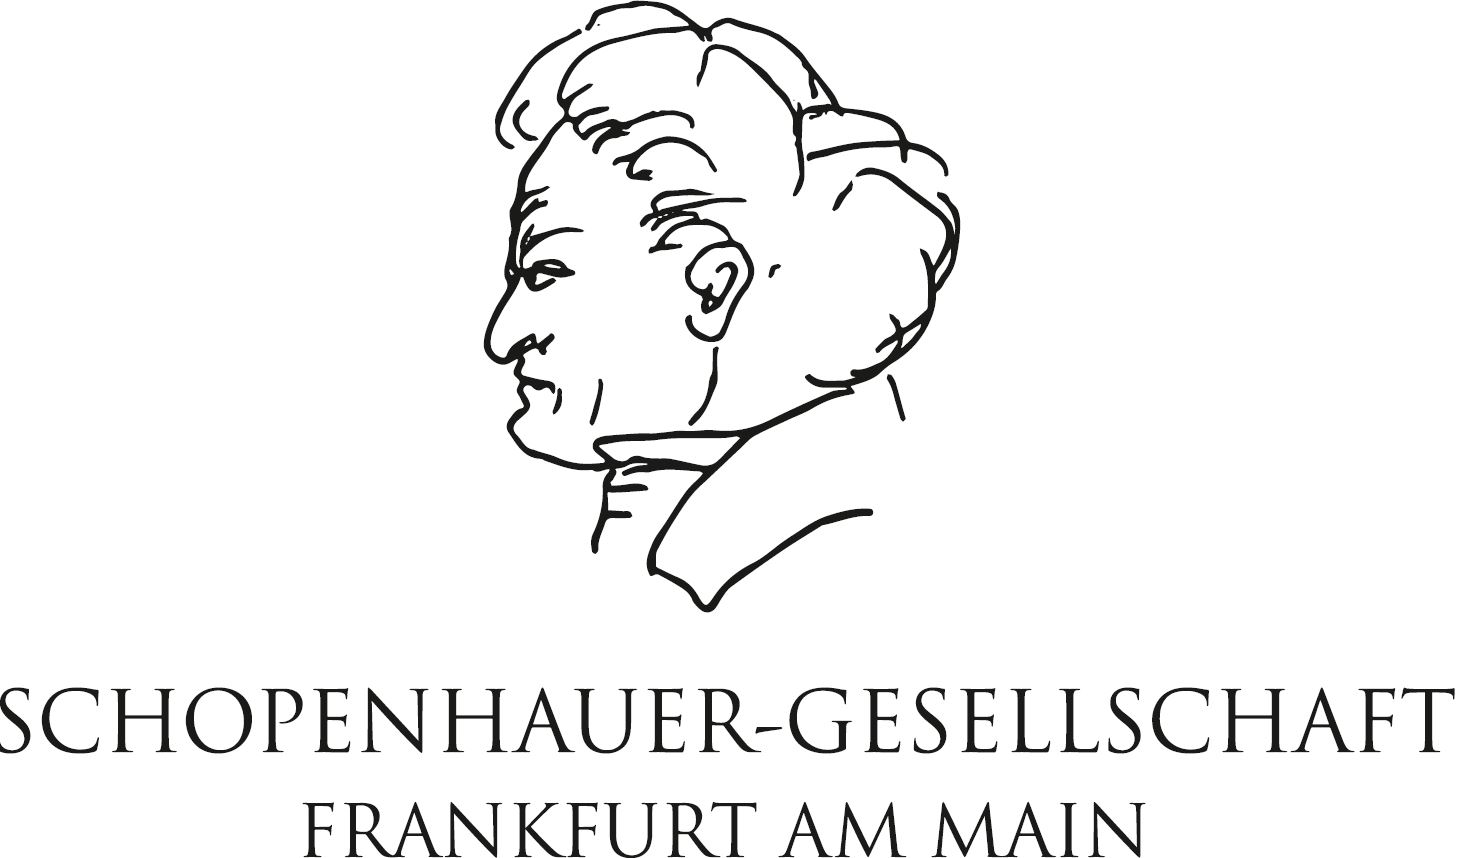 Schopenhauer-Gesellschaft Frankfurt am Main